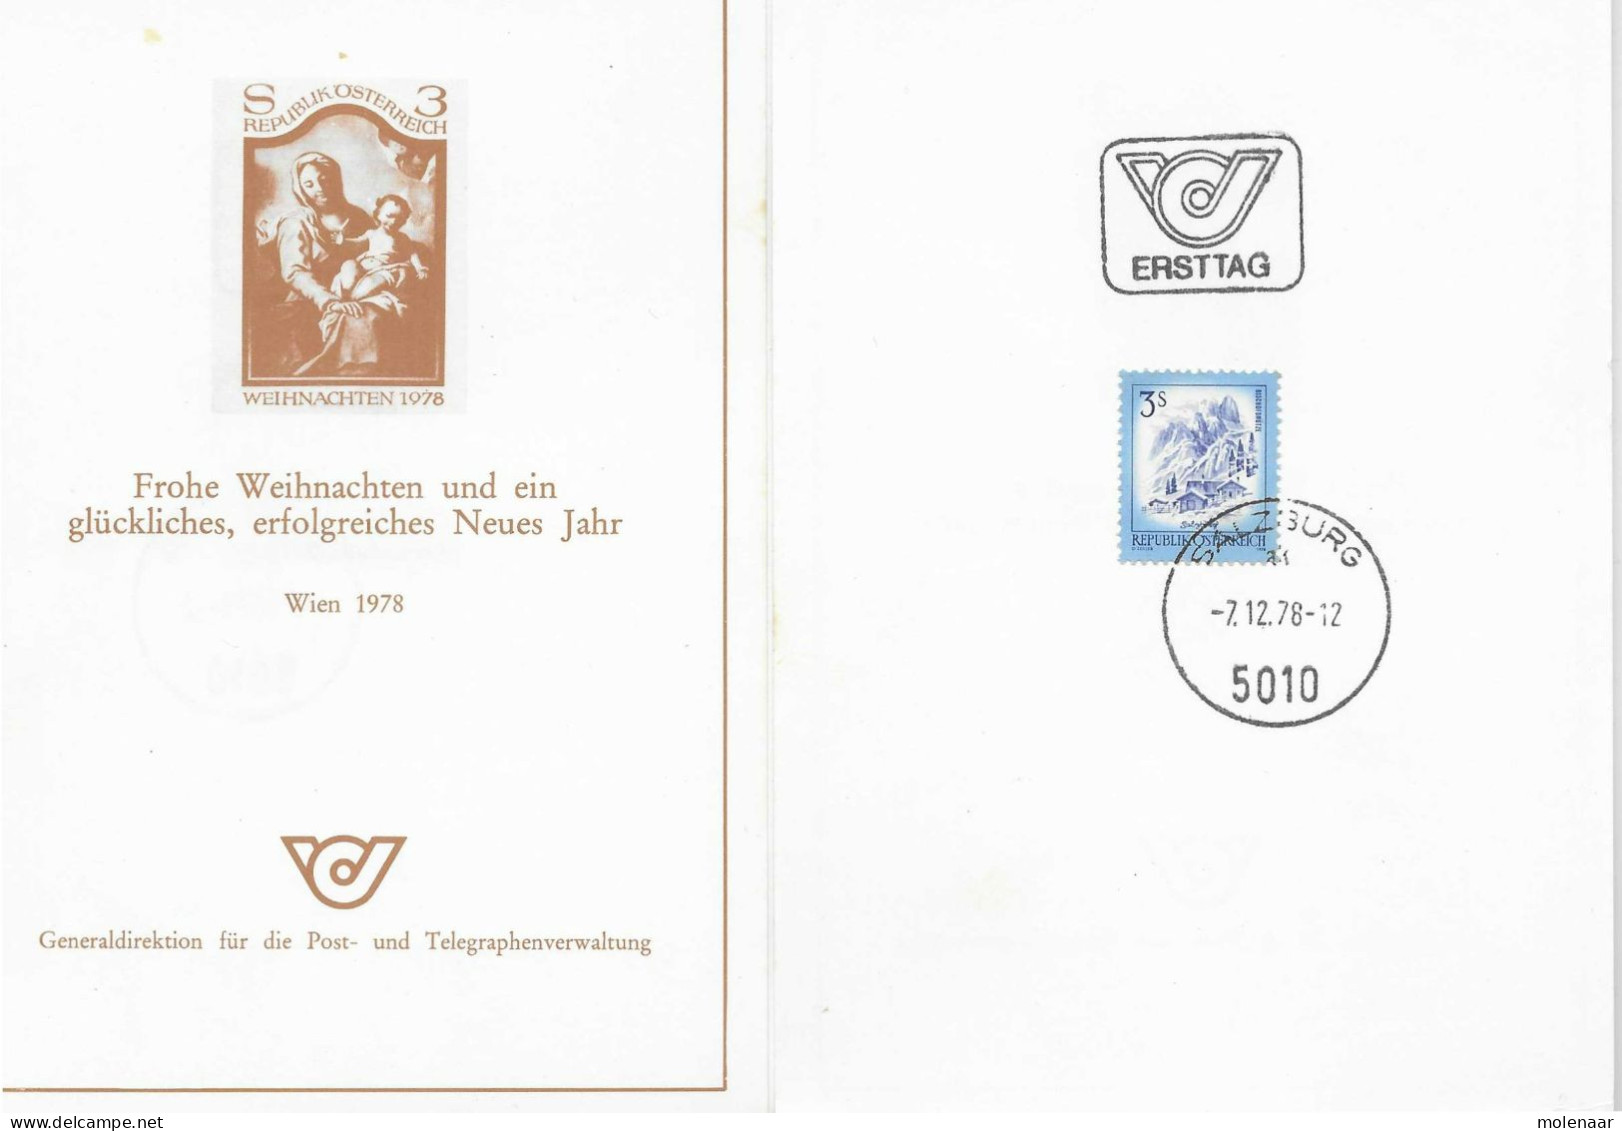 Postzegels > Europa > Oostenrijk >  Republiek > 1971-1900 > Kaart Uit 1978  Met 1 Postzegel (17772) - Briefe U. Dokumente